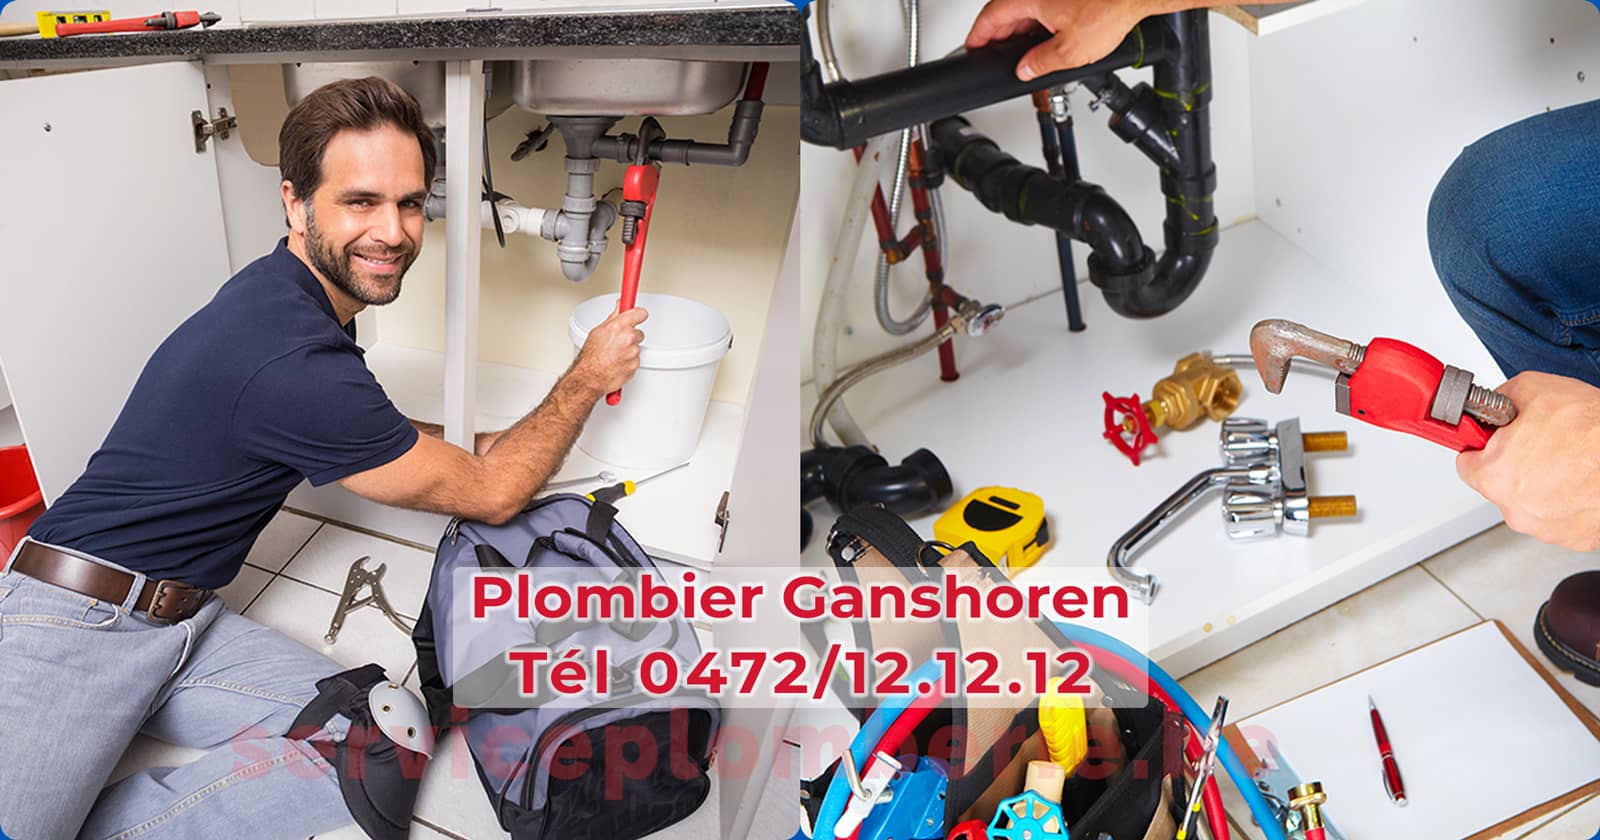 Plombier Ganshoren Agréé Professionnel Service Plomberie Tél 0472/12.12.12